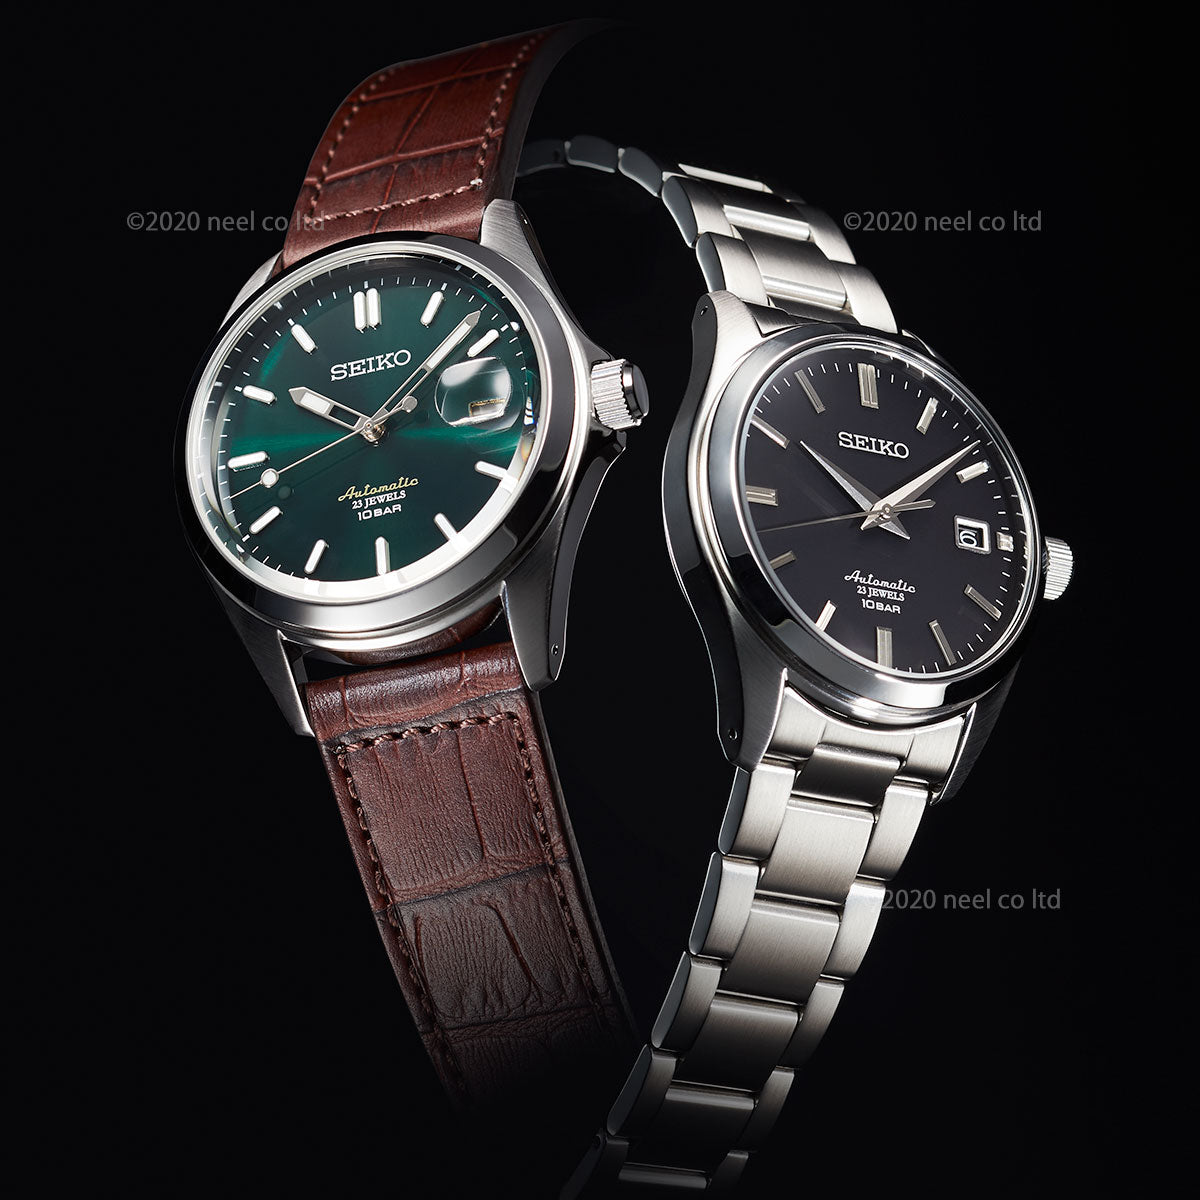 セイコー メカニカル 自動巻き 先行販売 ネット流通限定モデル 腕時計 メンズ クラシックライン SEIKO Mechanical SZSB018